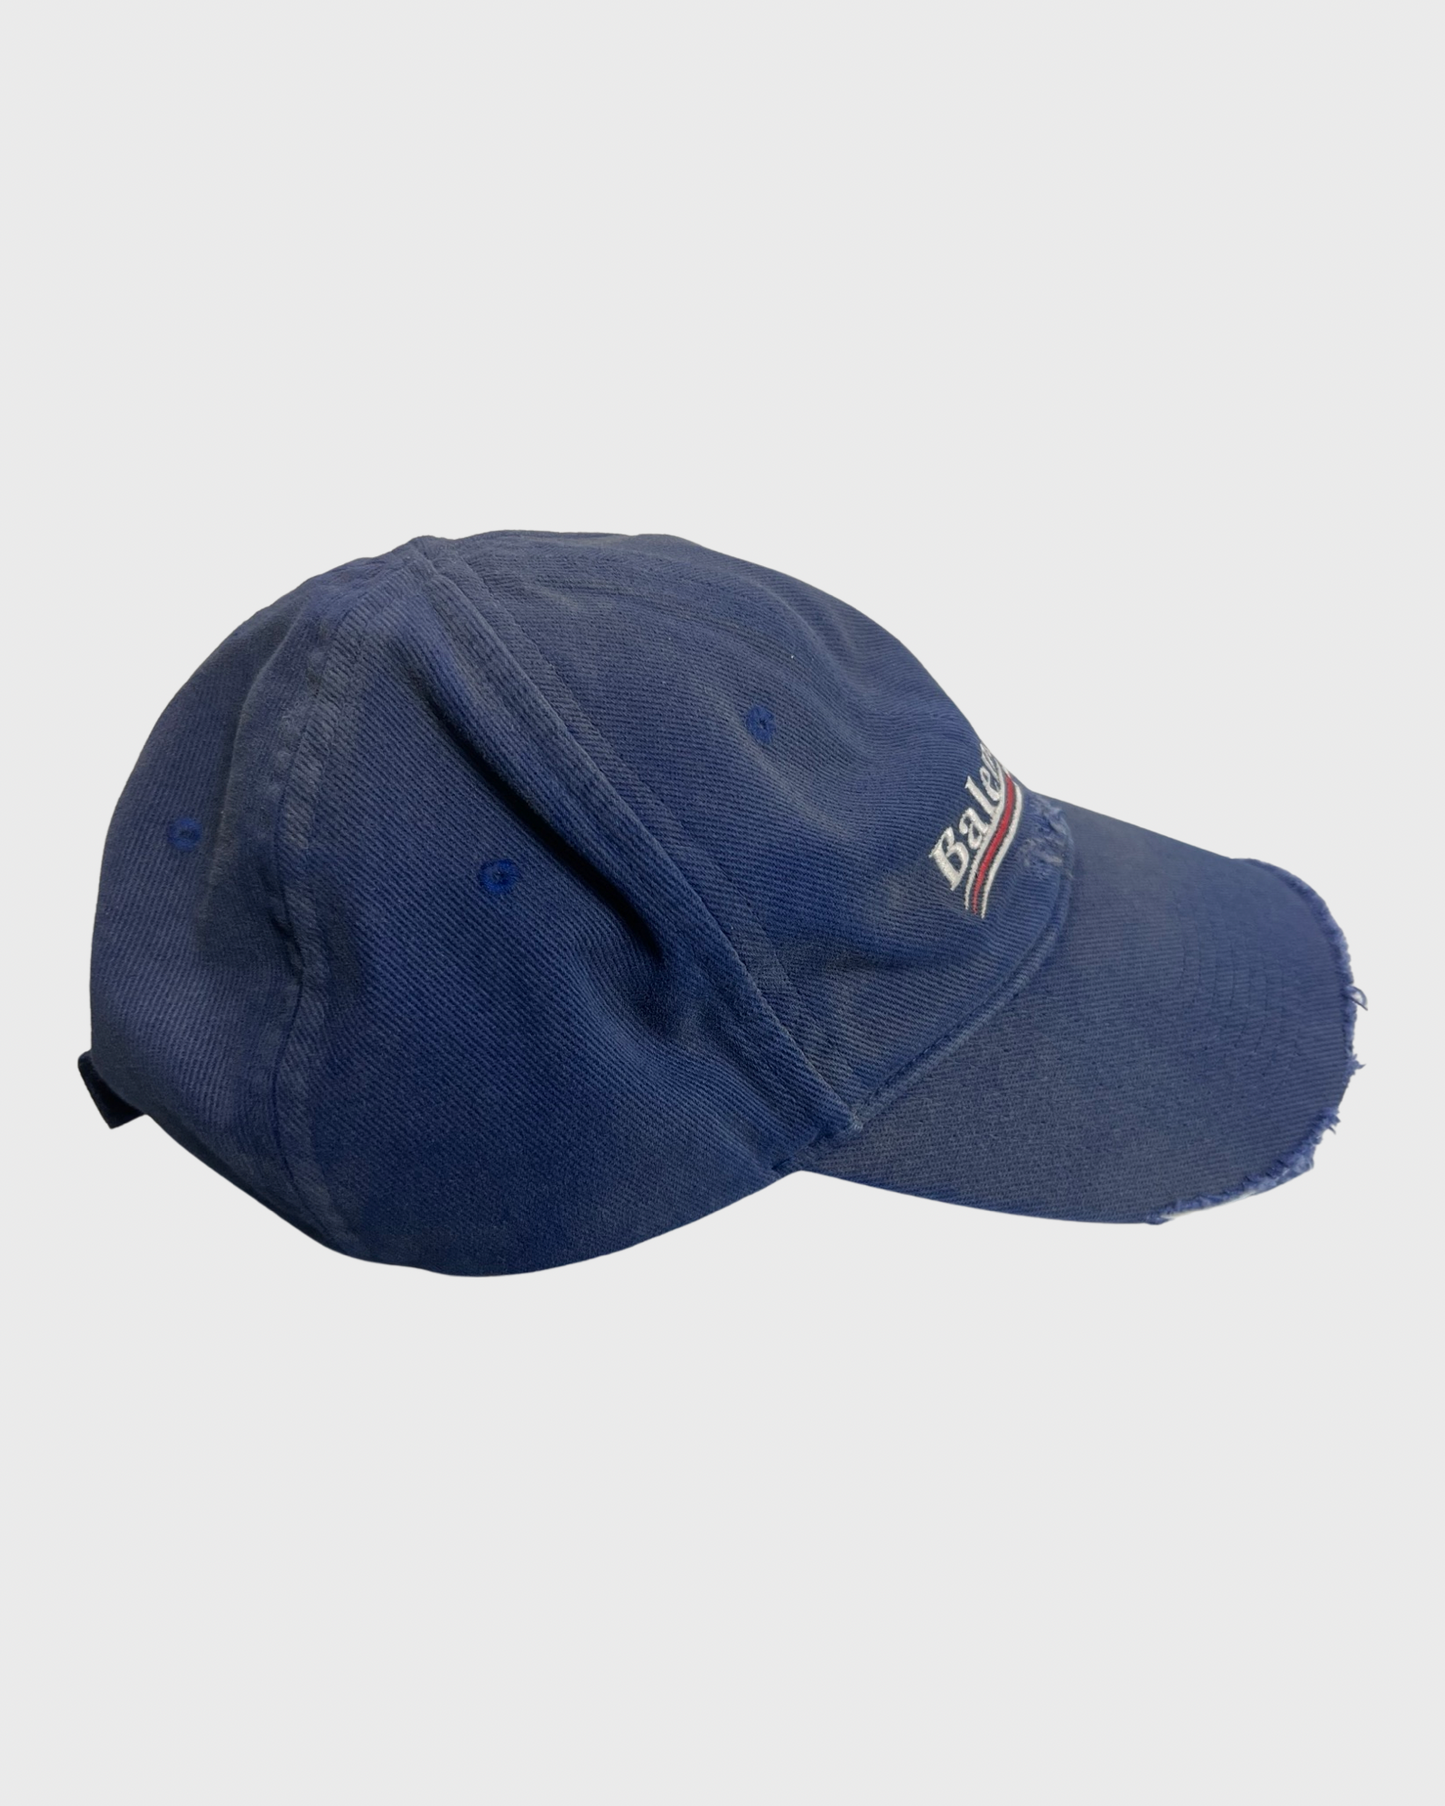 Balenciaga distressed campaign logo cap Hat blue SZ:L